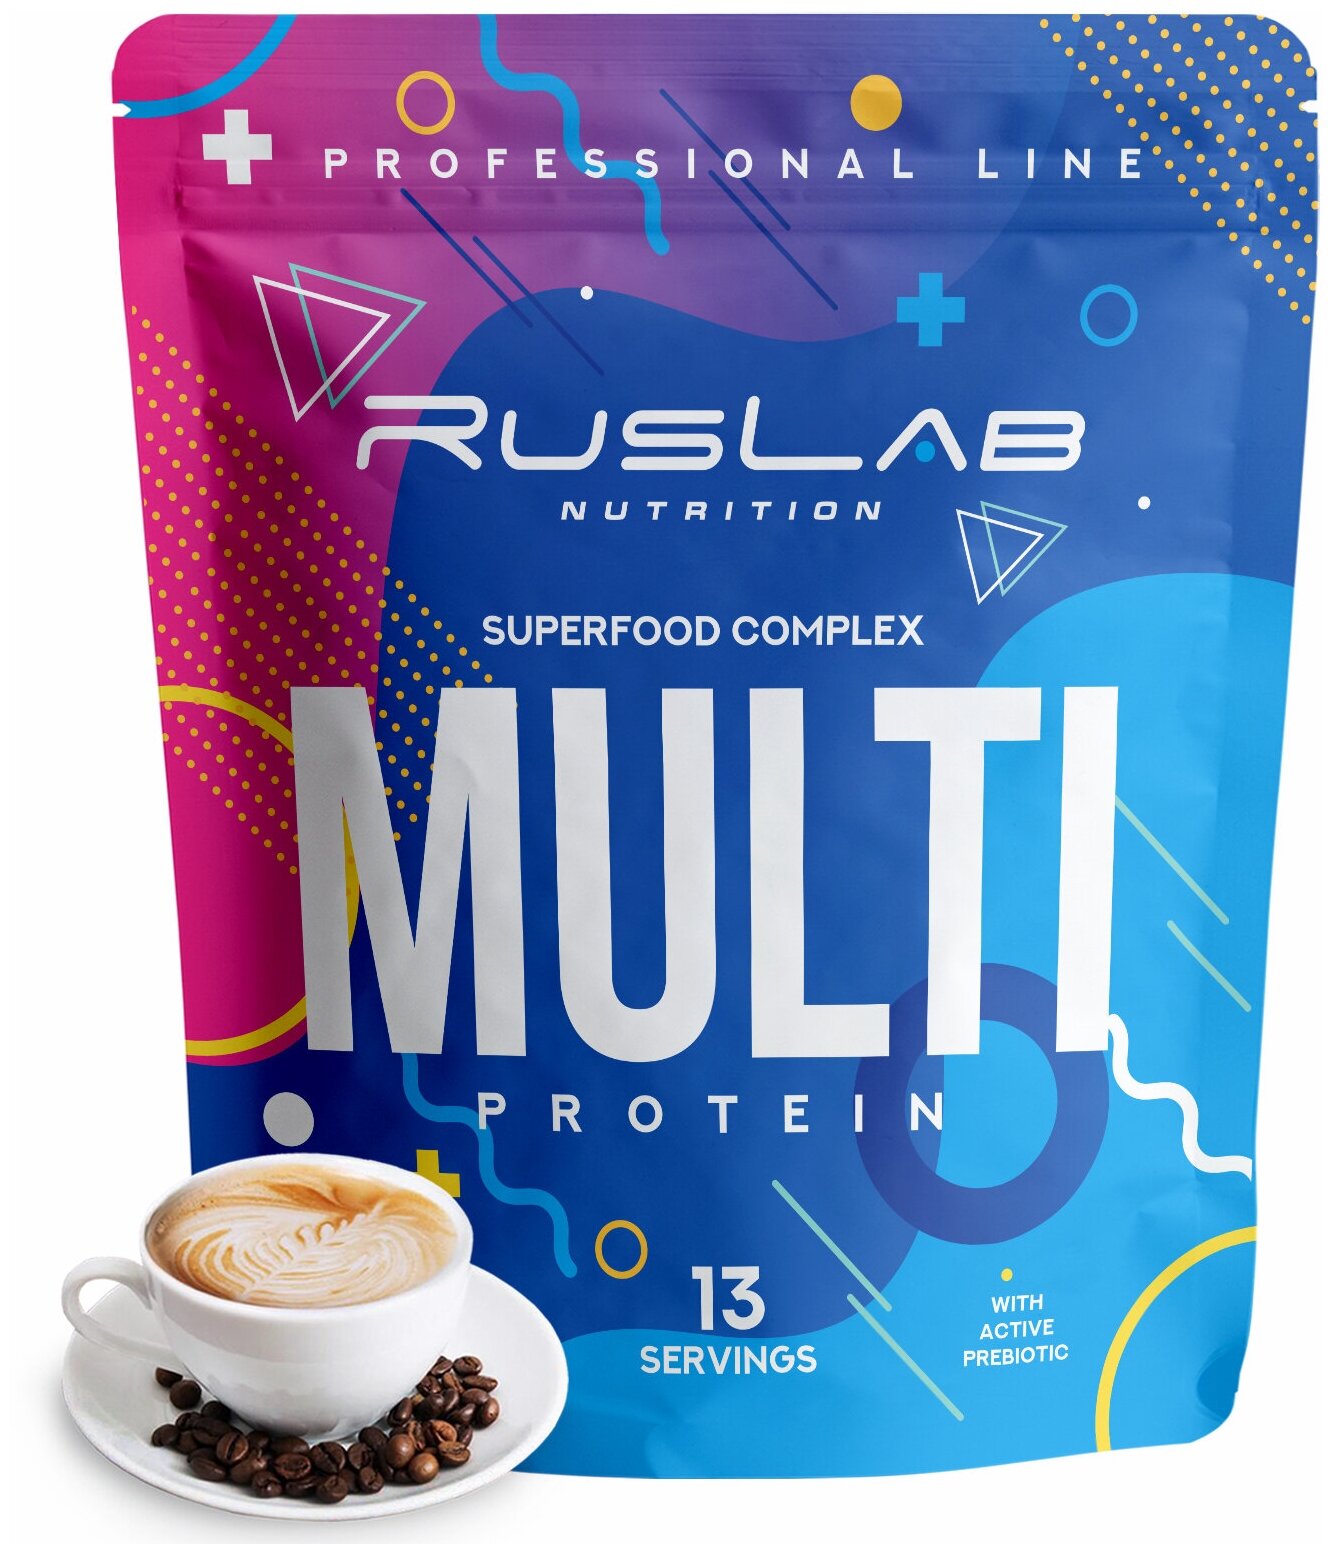 MULTI PROTEIN, многокомпонентный протеин, белковый коктейль для похудения (416 гр), вкус капучино